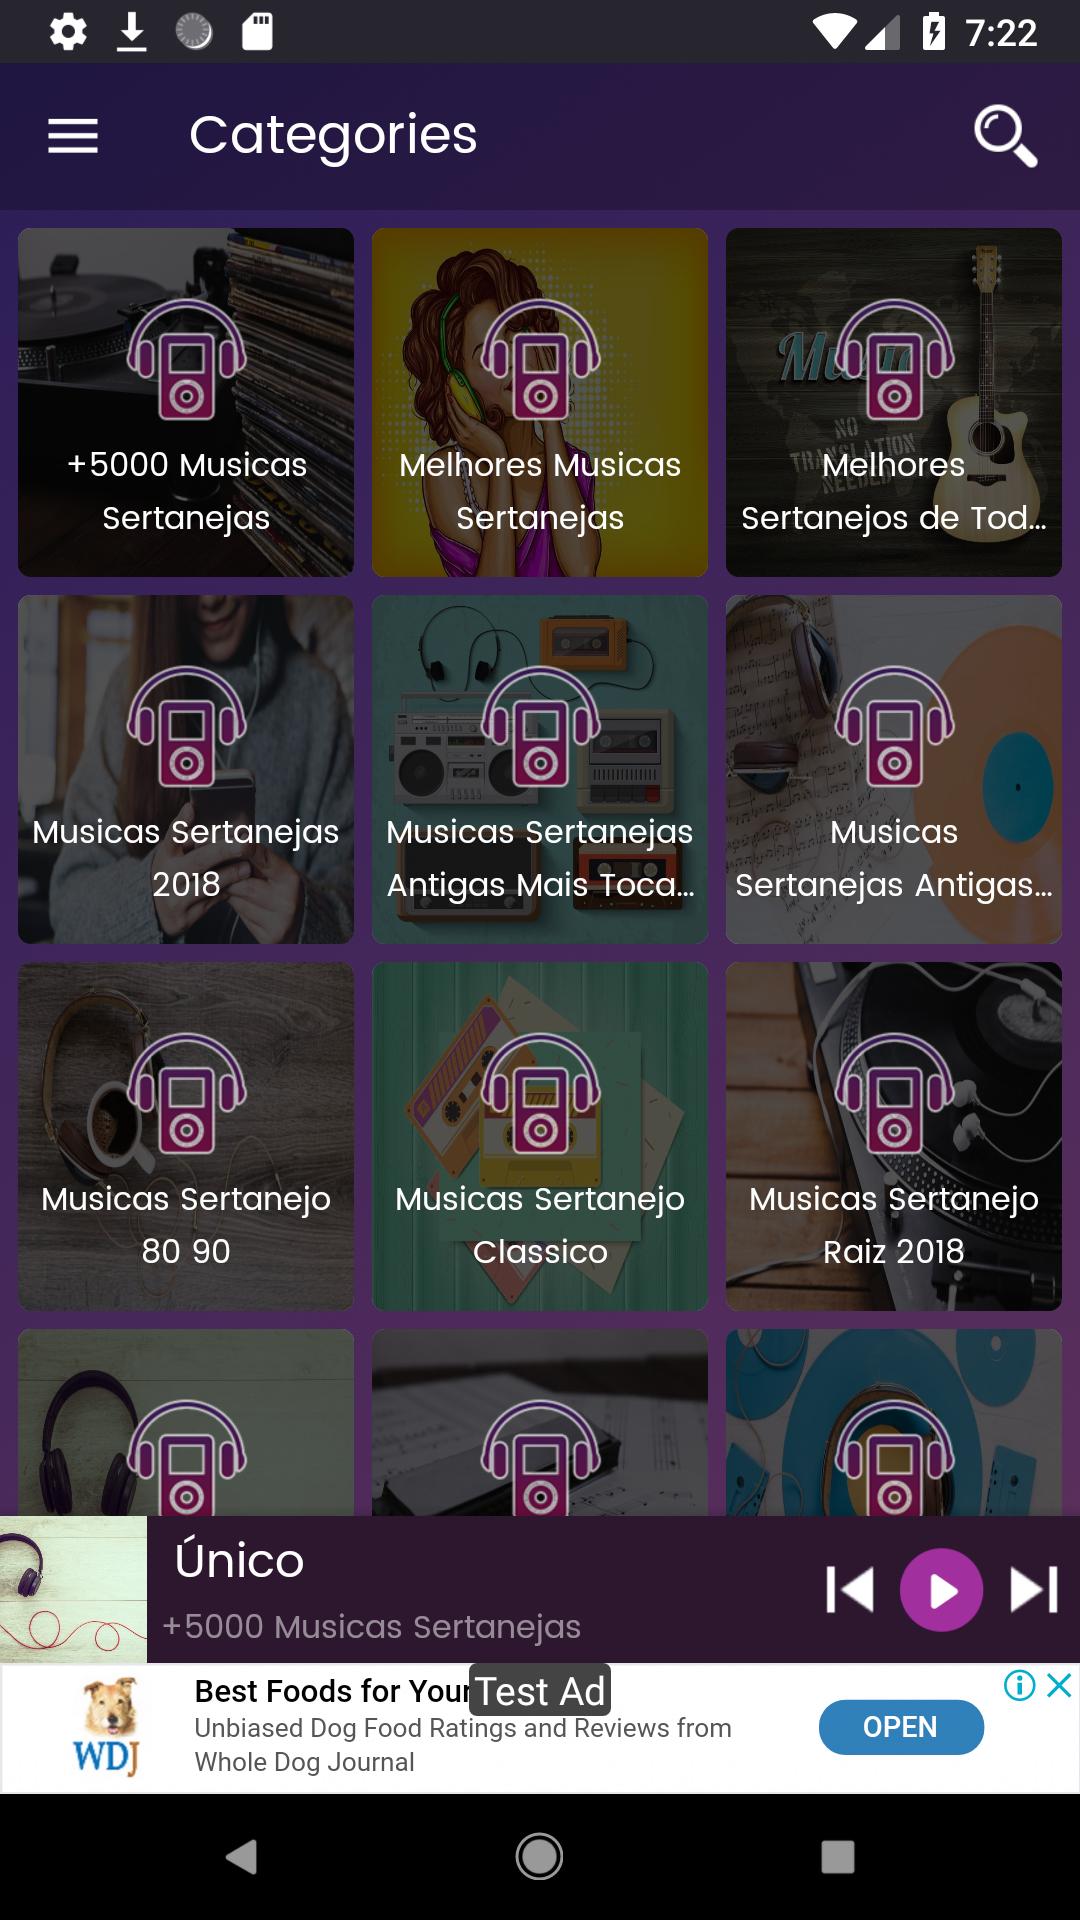 Seleção dos Sertanejos Antigos Musicas Sertanejas for Android - APK Download